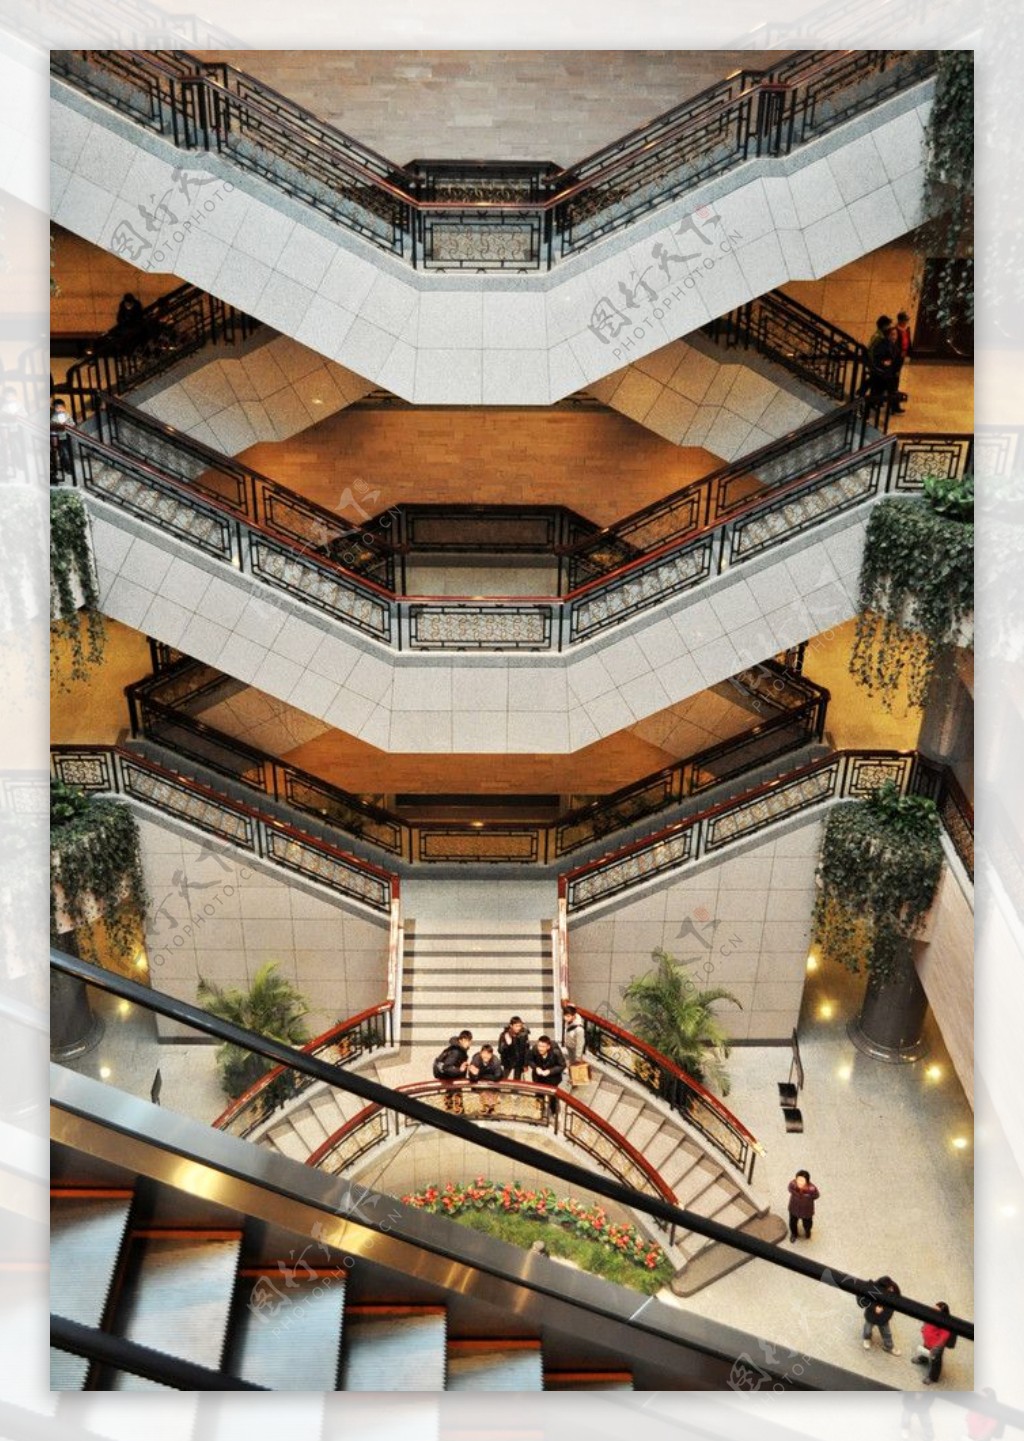 上海博物馆大厅楼梯图片